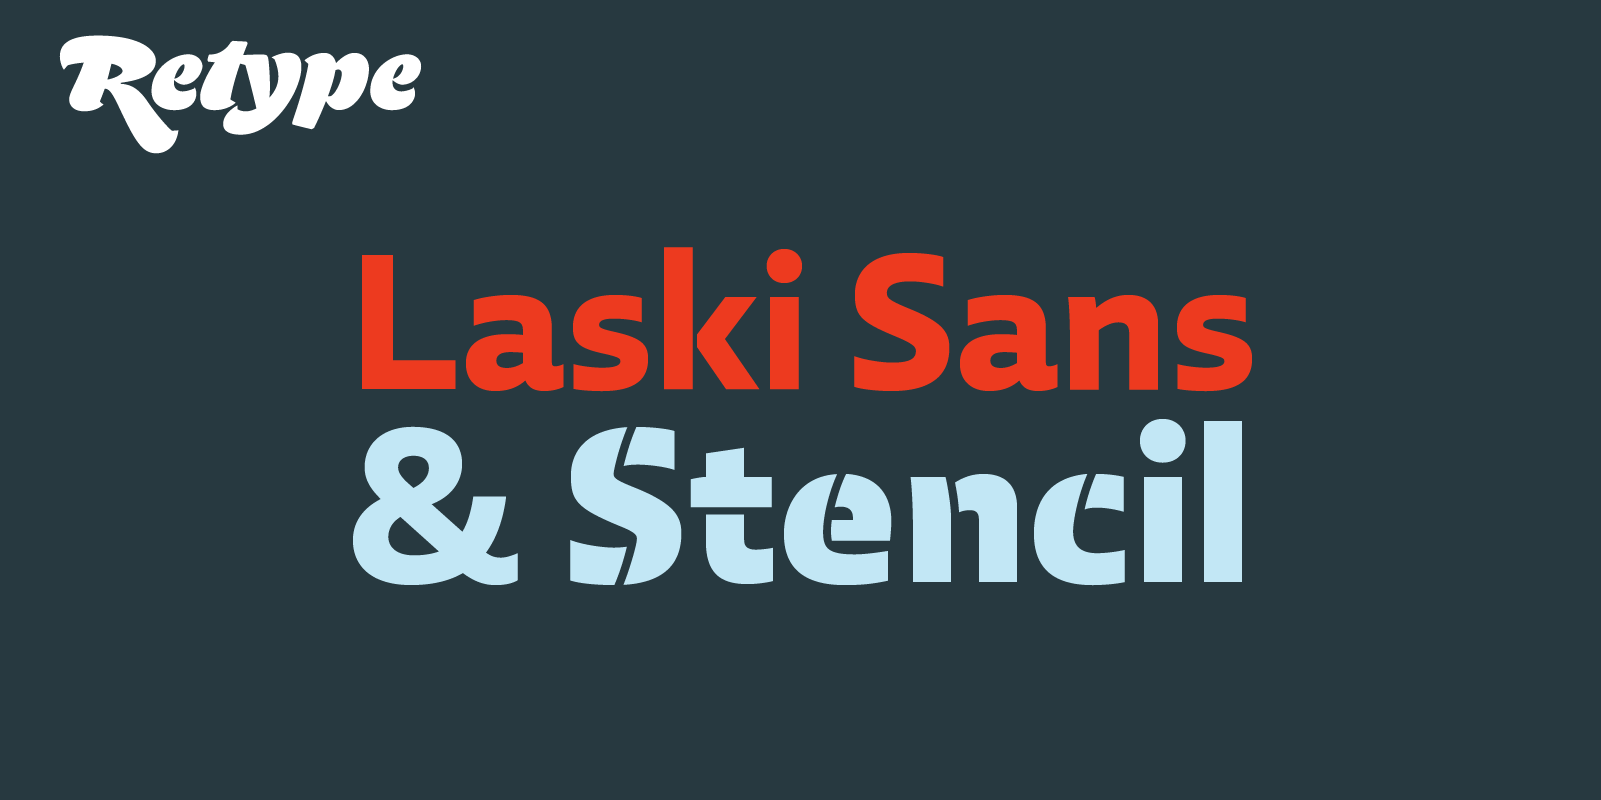 Card displaying Laski Sans typeface in various styles